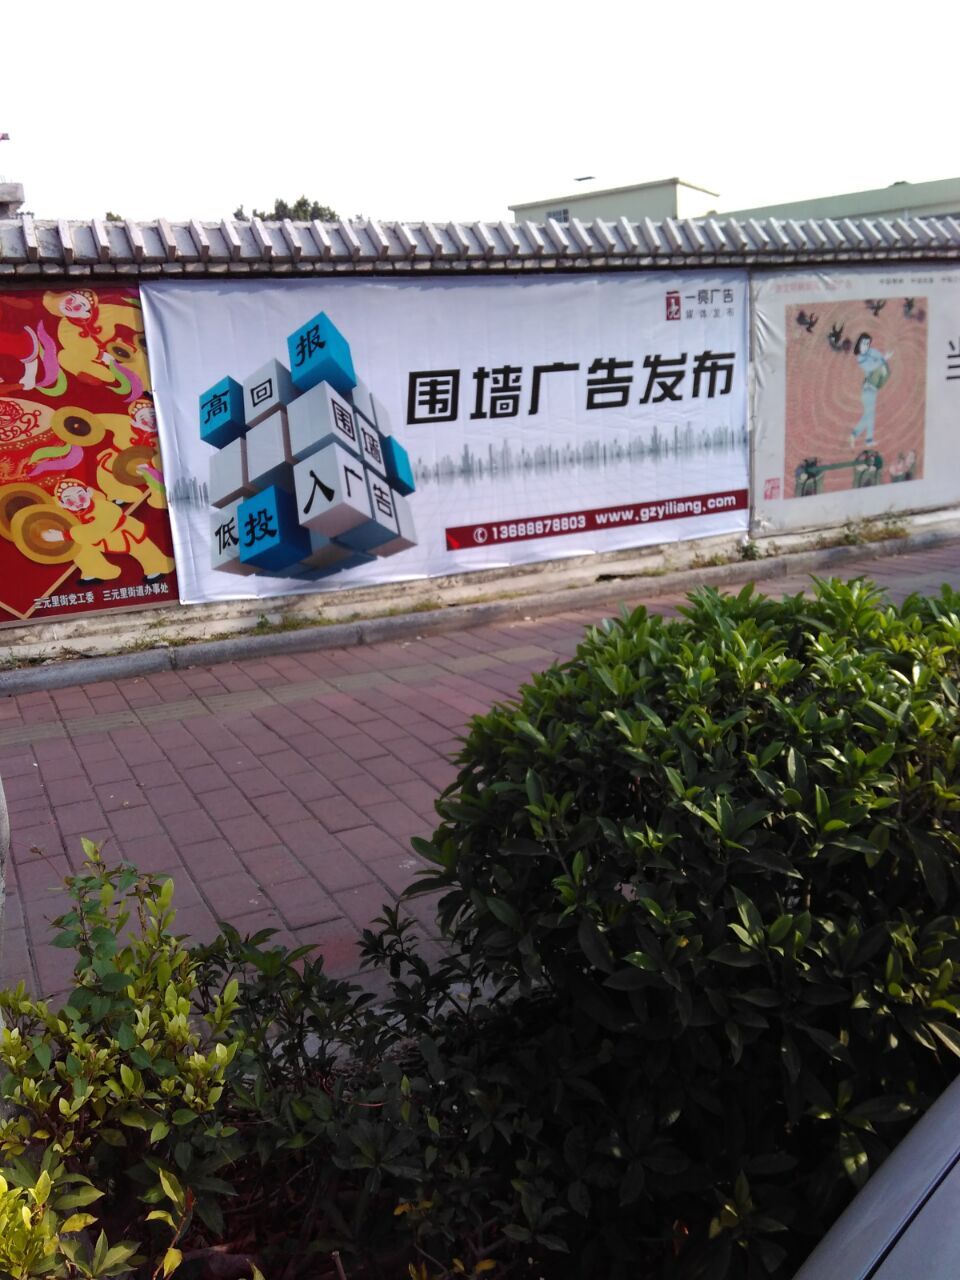 供应广州广告围墙广告广州围墙广告发布